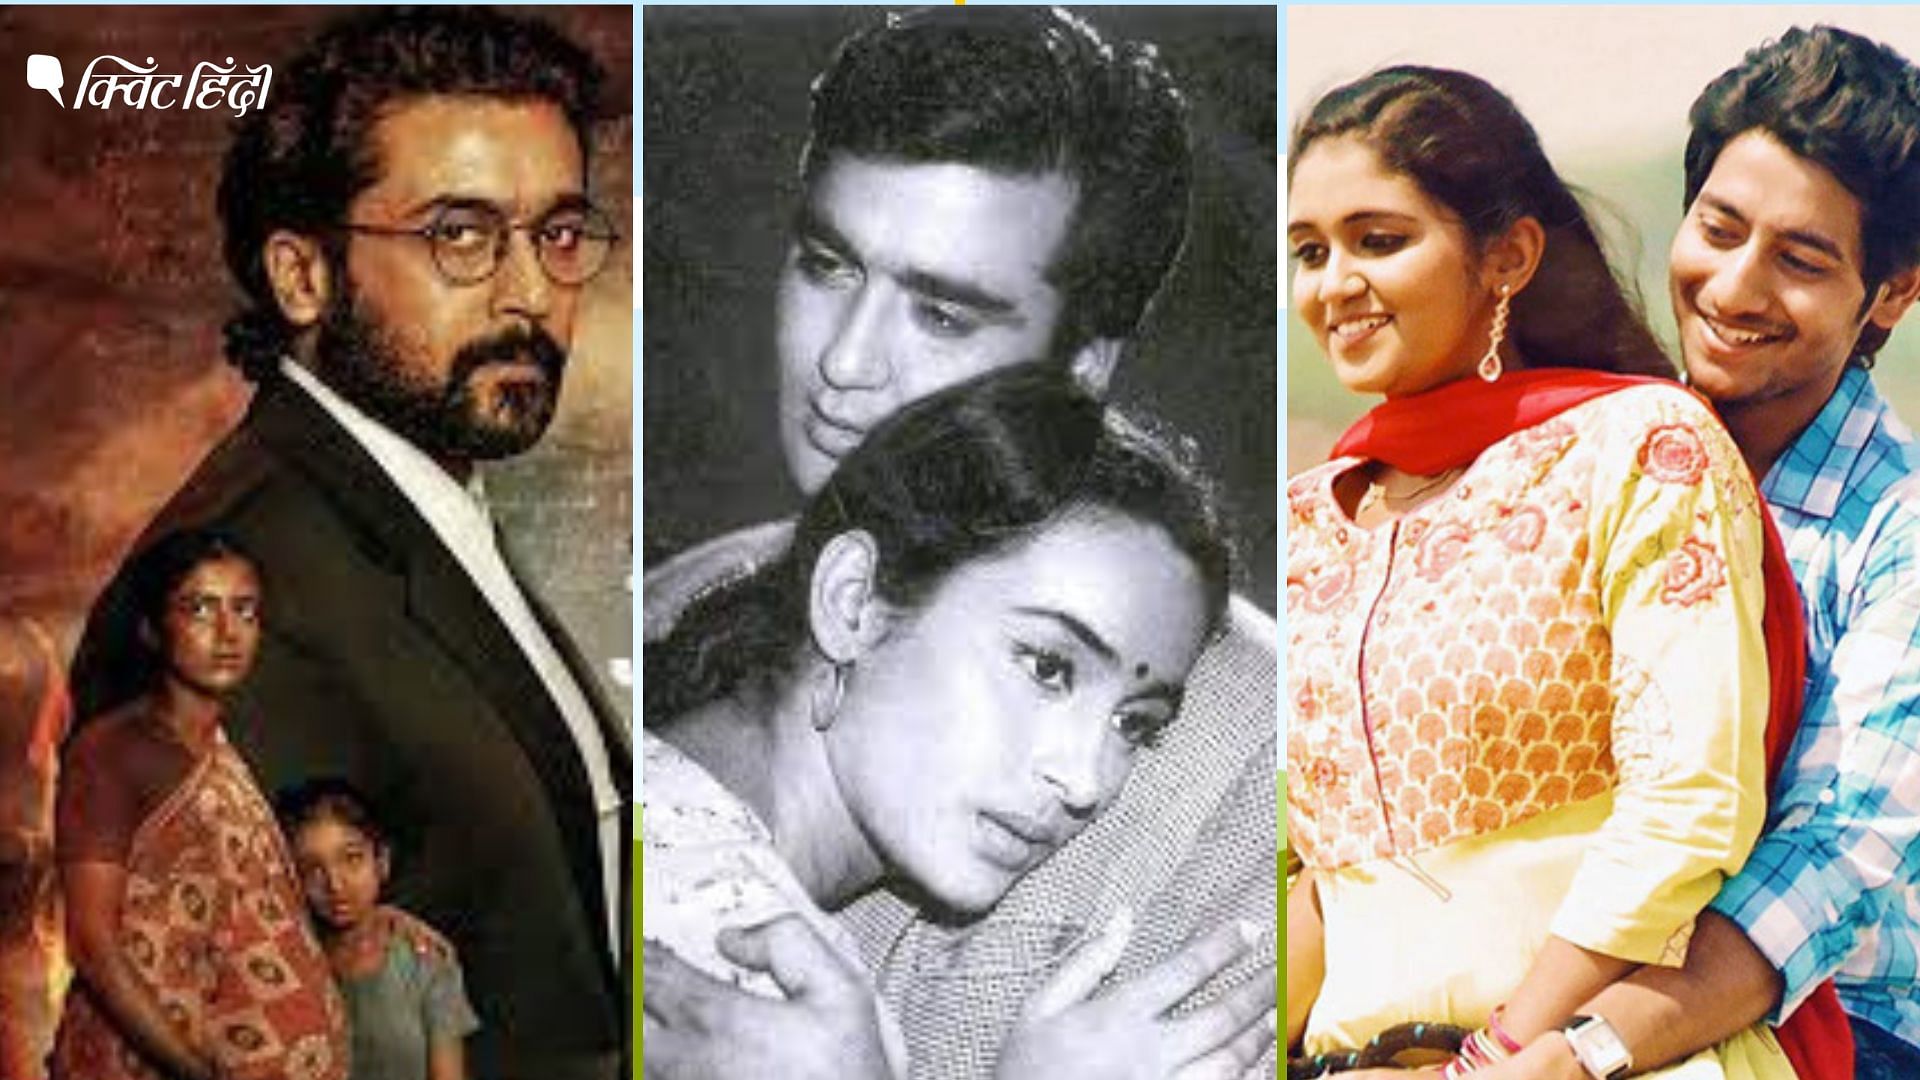 <div class="paragraphs"><p>Films on caste: सुजाता, सैराट, जय भीम, दामुल, आरक्षण जैसी फिल्में शानदार फिल्में भारत में बनी हैं</p></div>